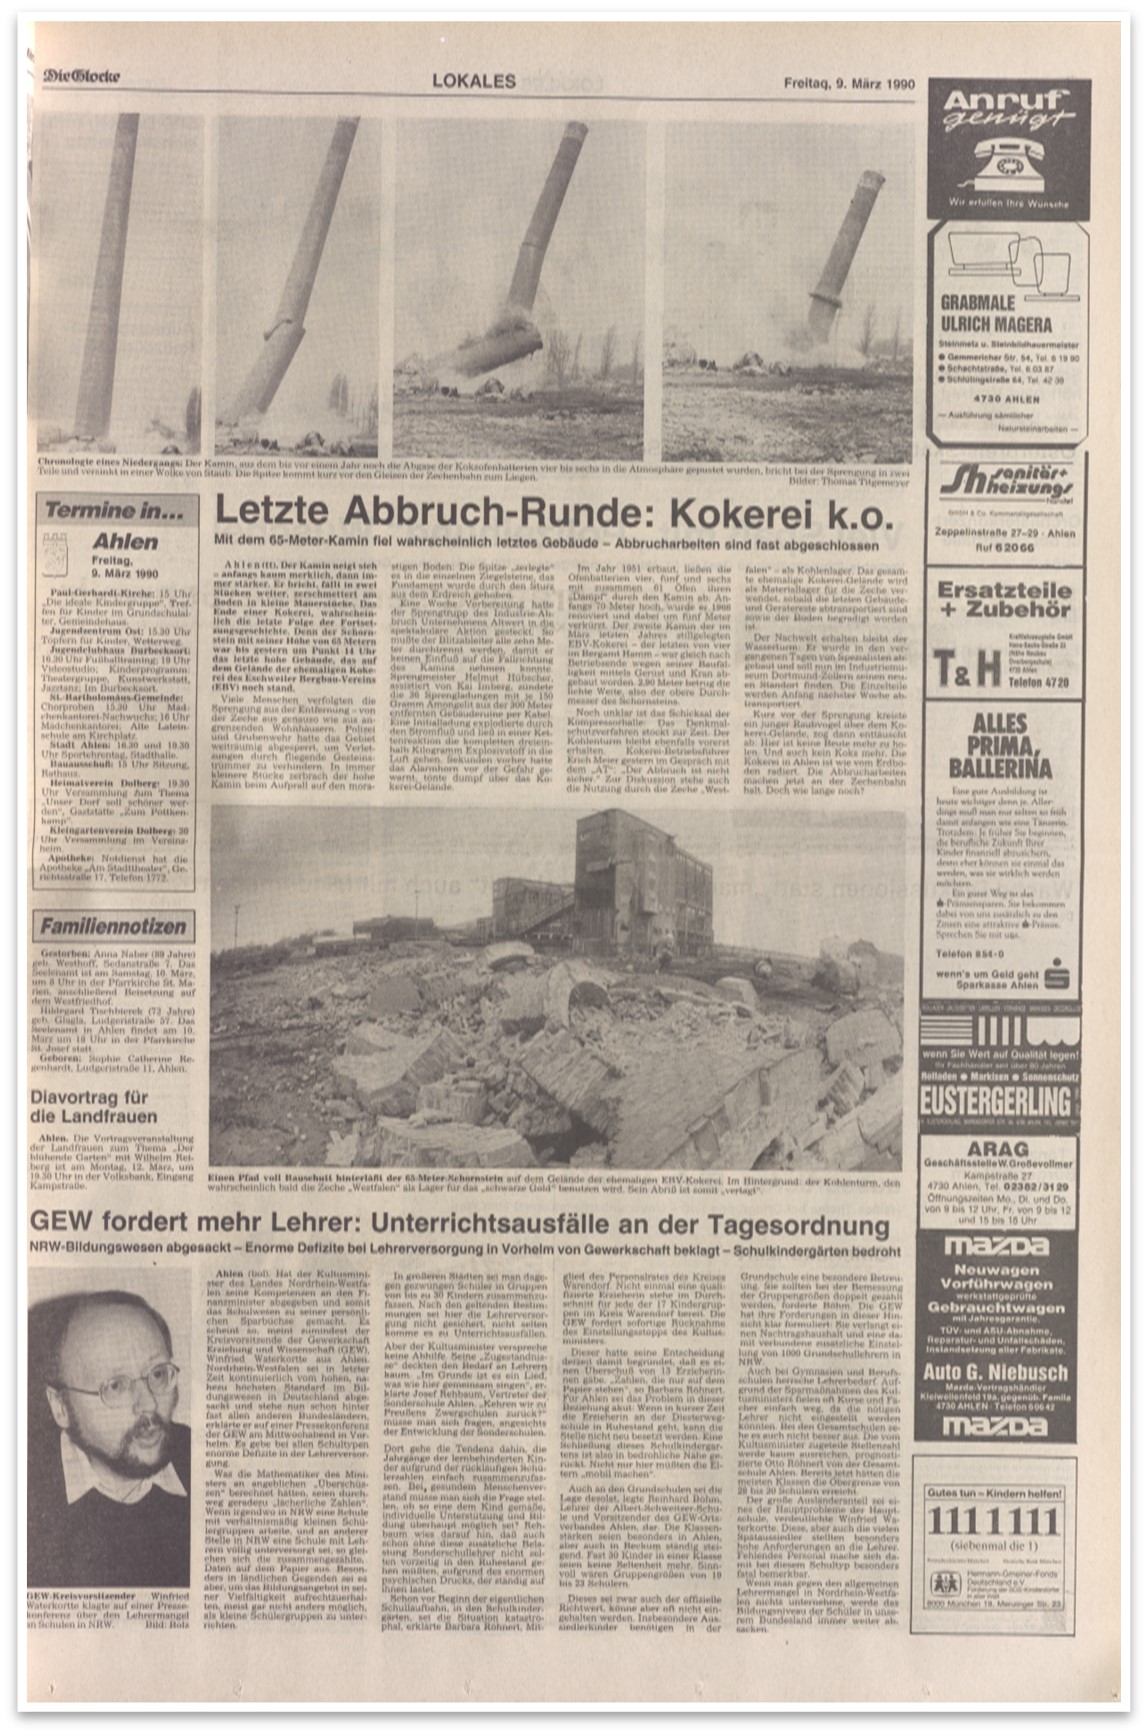 Foto: Ahlener Tageblatt vom 9.3.1990 (KAW, S  20)